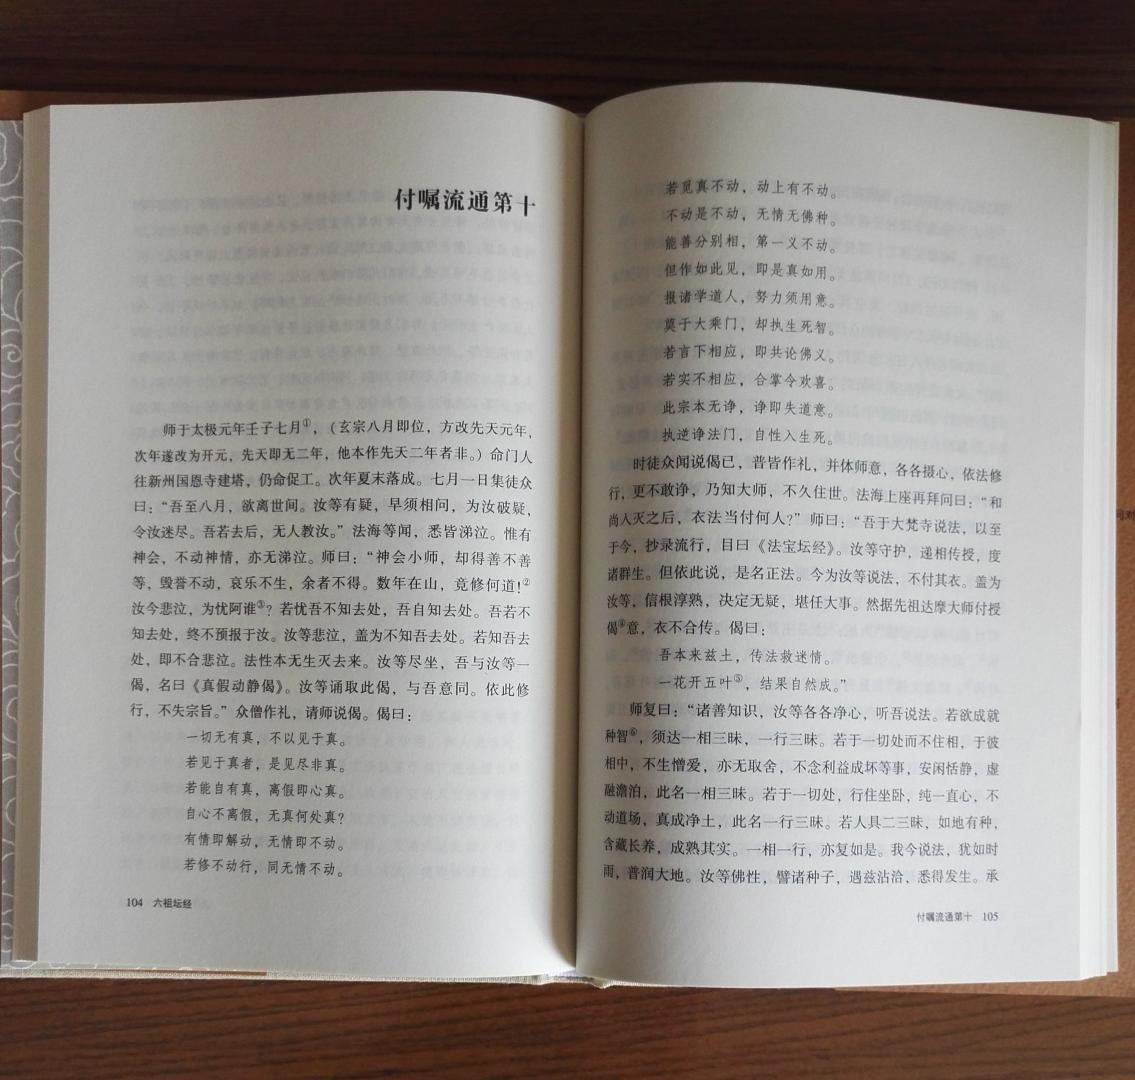 中州古籍这套书很不错，选材用纸装帧俱佳，适合阅读和收藏。六祖慧能是中国思想家中的奇才，看其坛经，很有感慨。